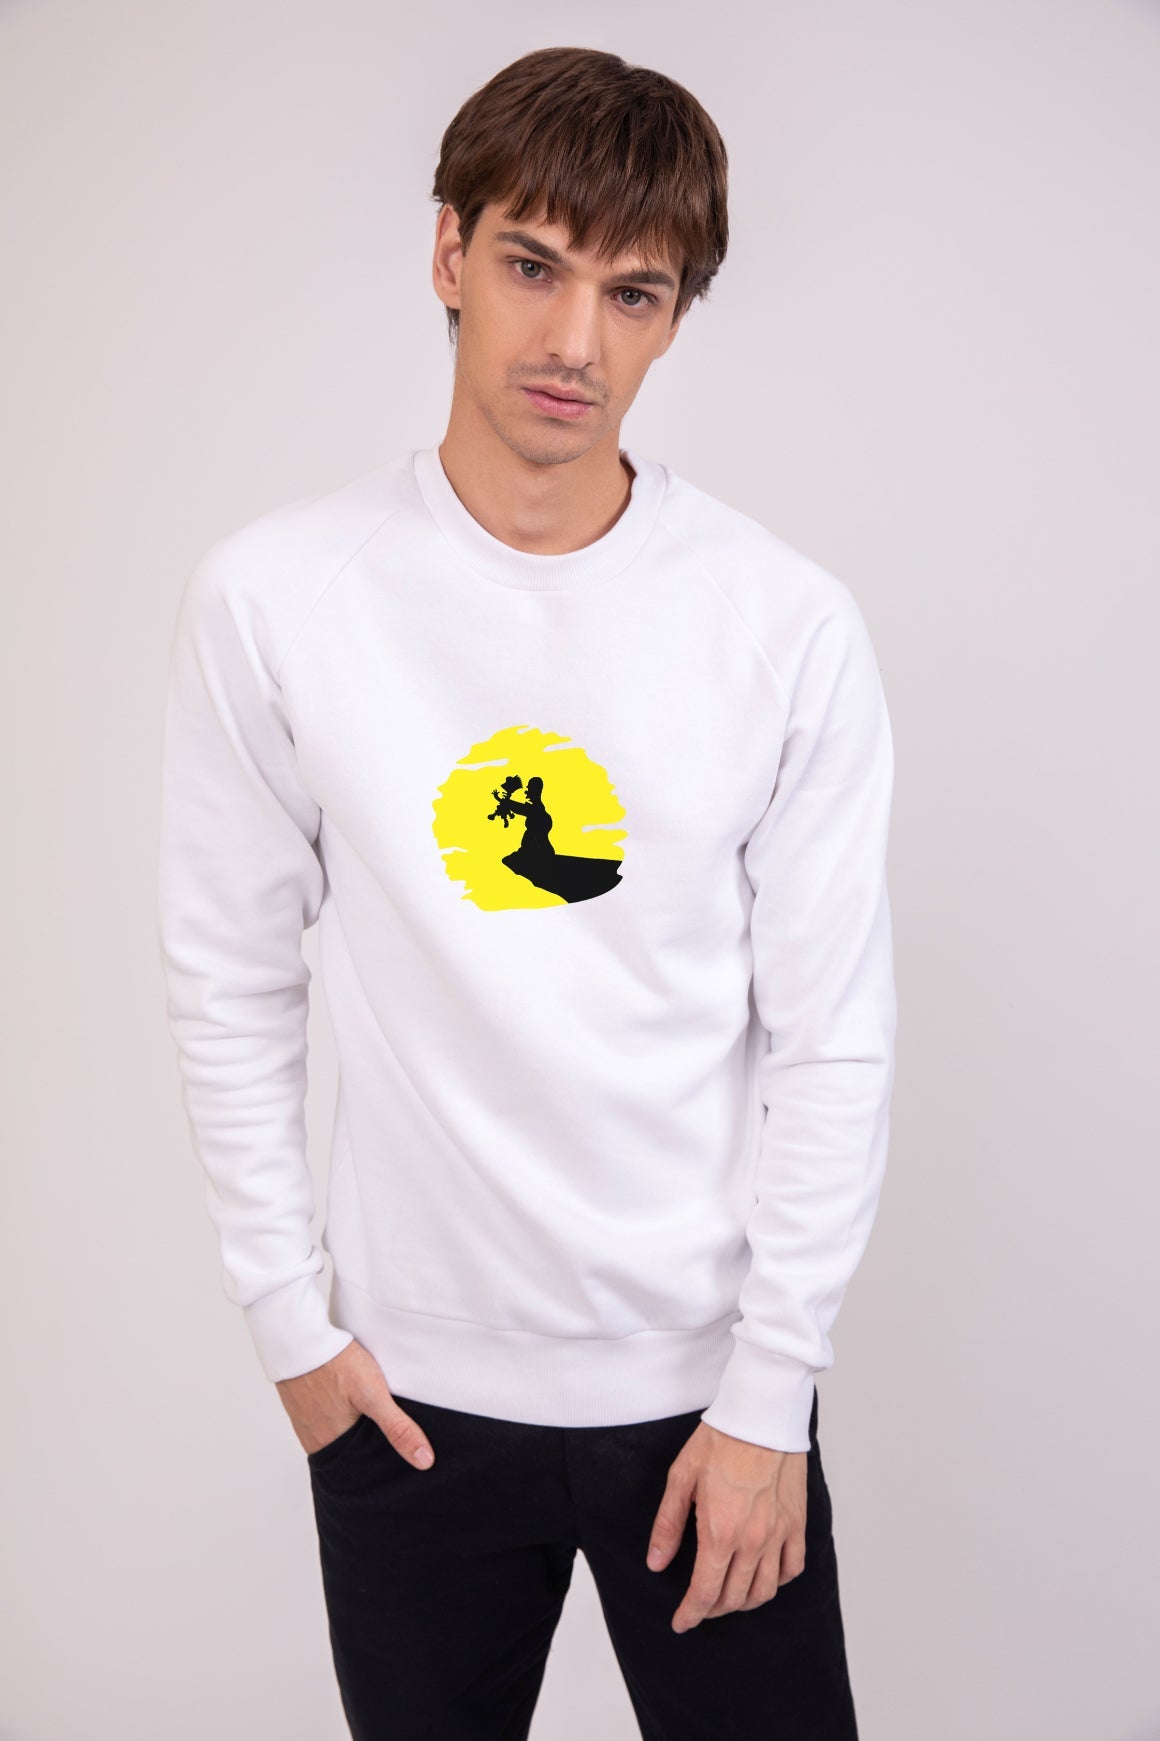 The simpsons - Printed Sweatshirt